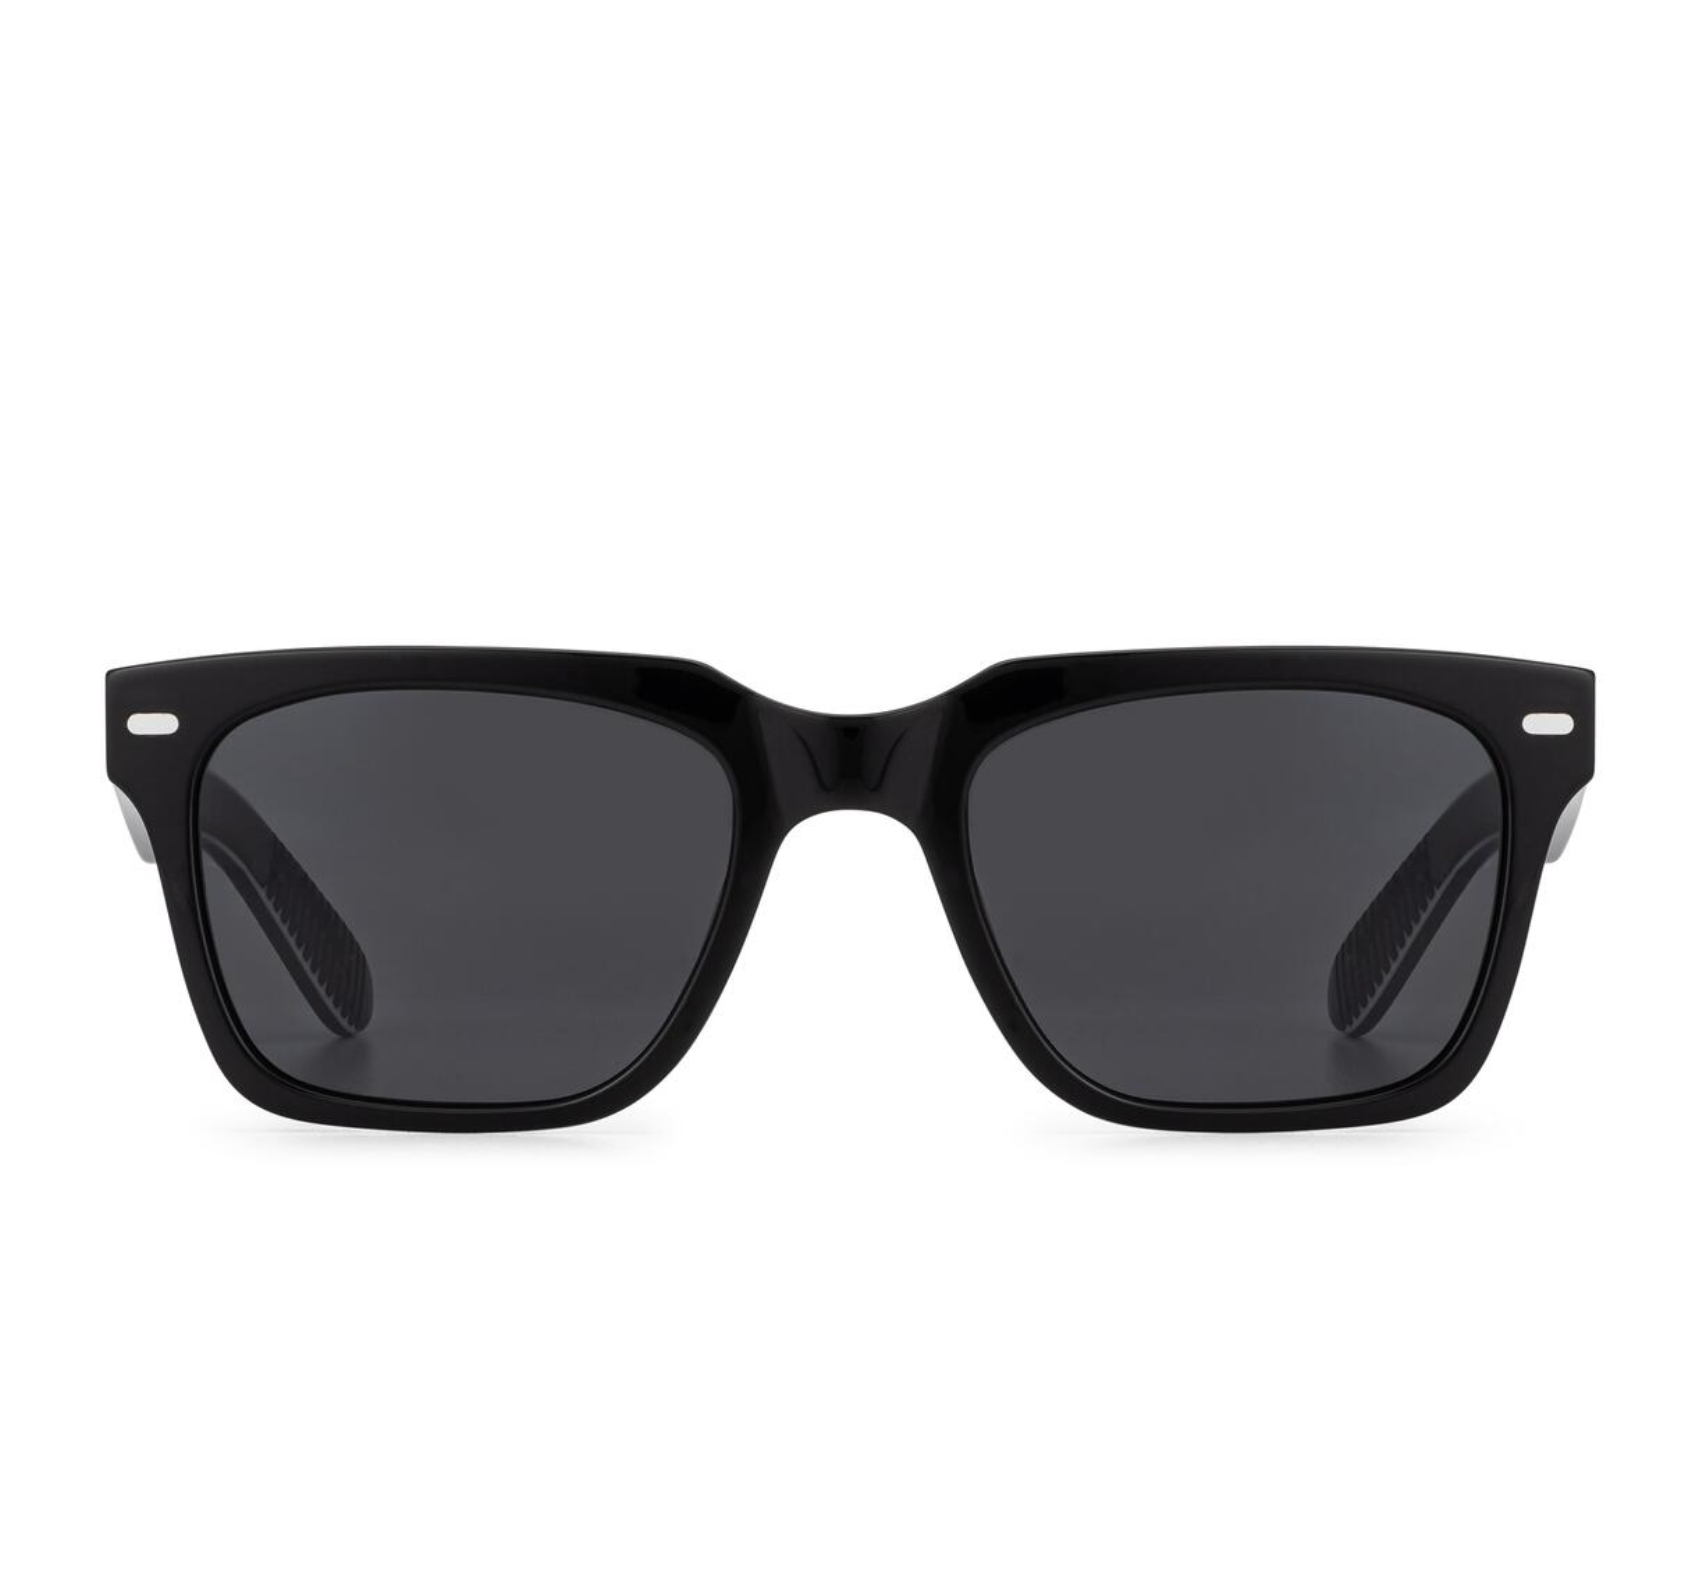 Cut Forty Sunglasses - Black/Black